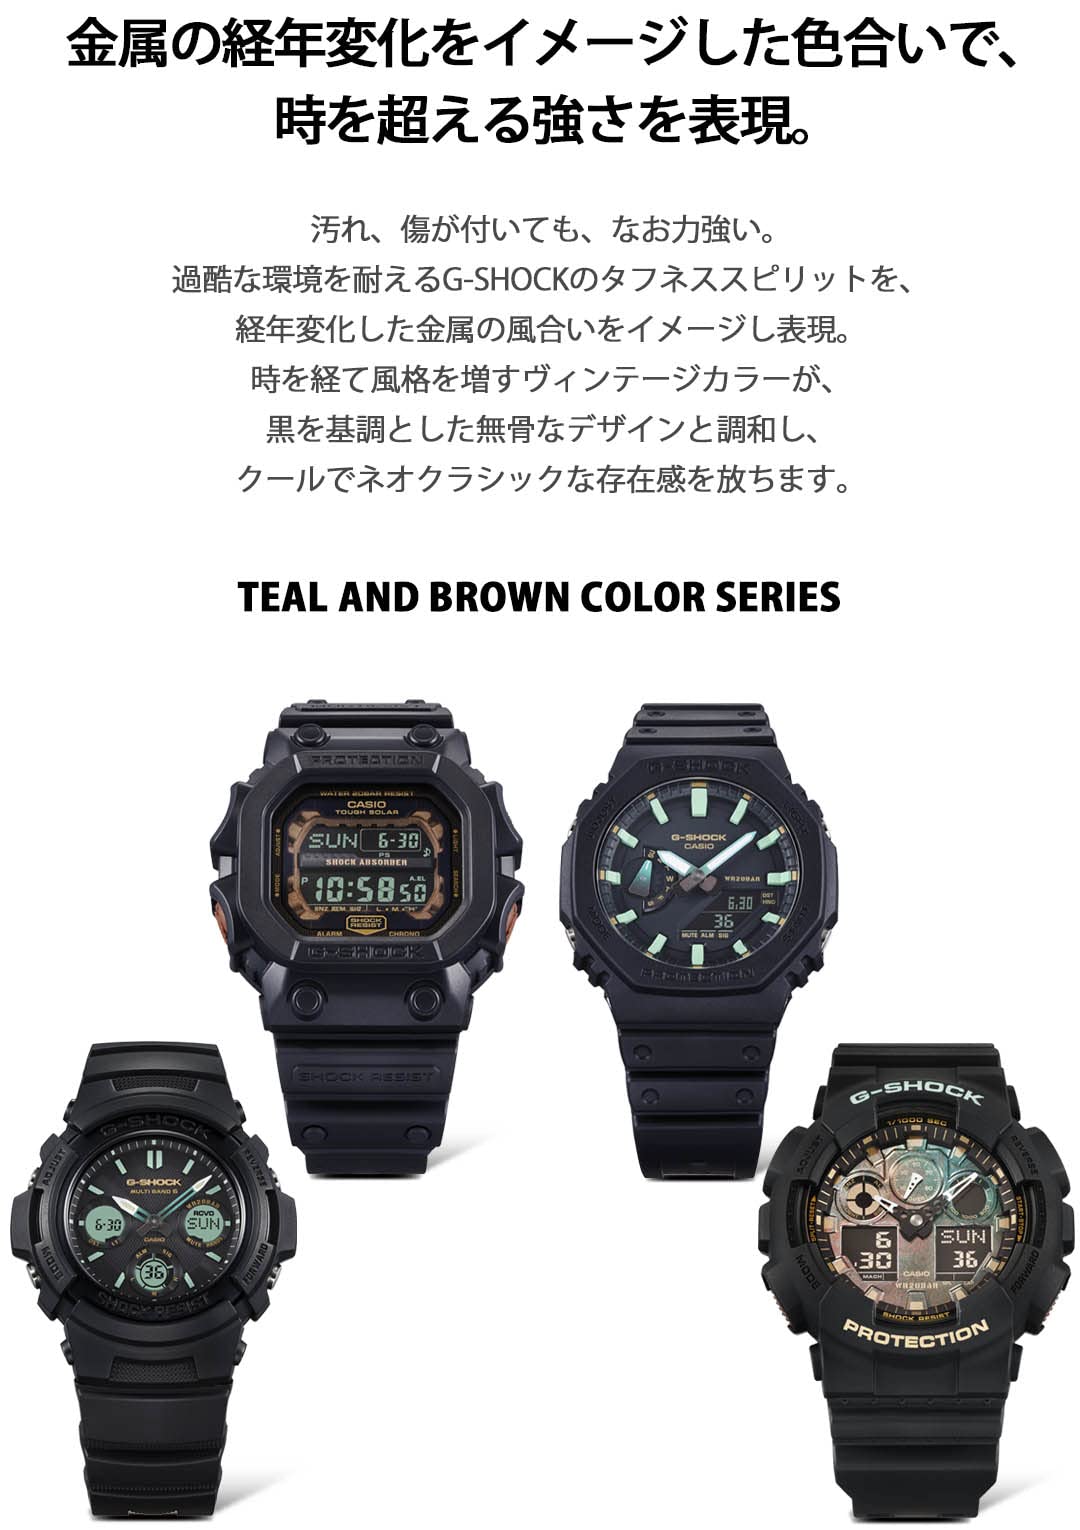 [カシオ] 腕時計 ジーショック 国内正規品 タフソーラー TEAL AND BROWN COLOR SERIES GX-56RC-1JF メンズ ブラック - BanzaiHobby